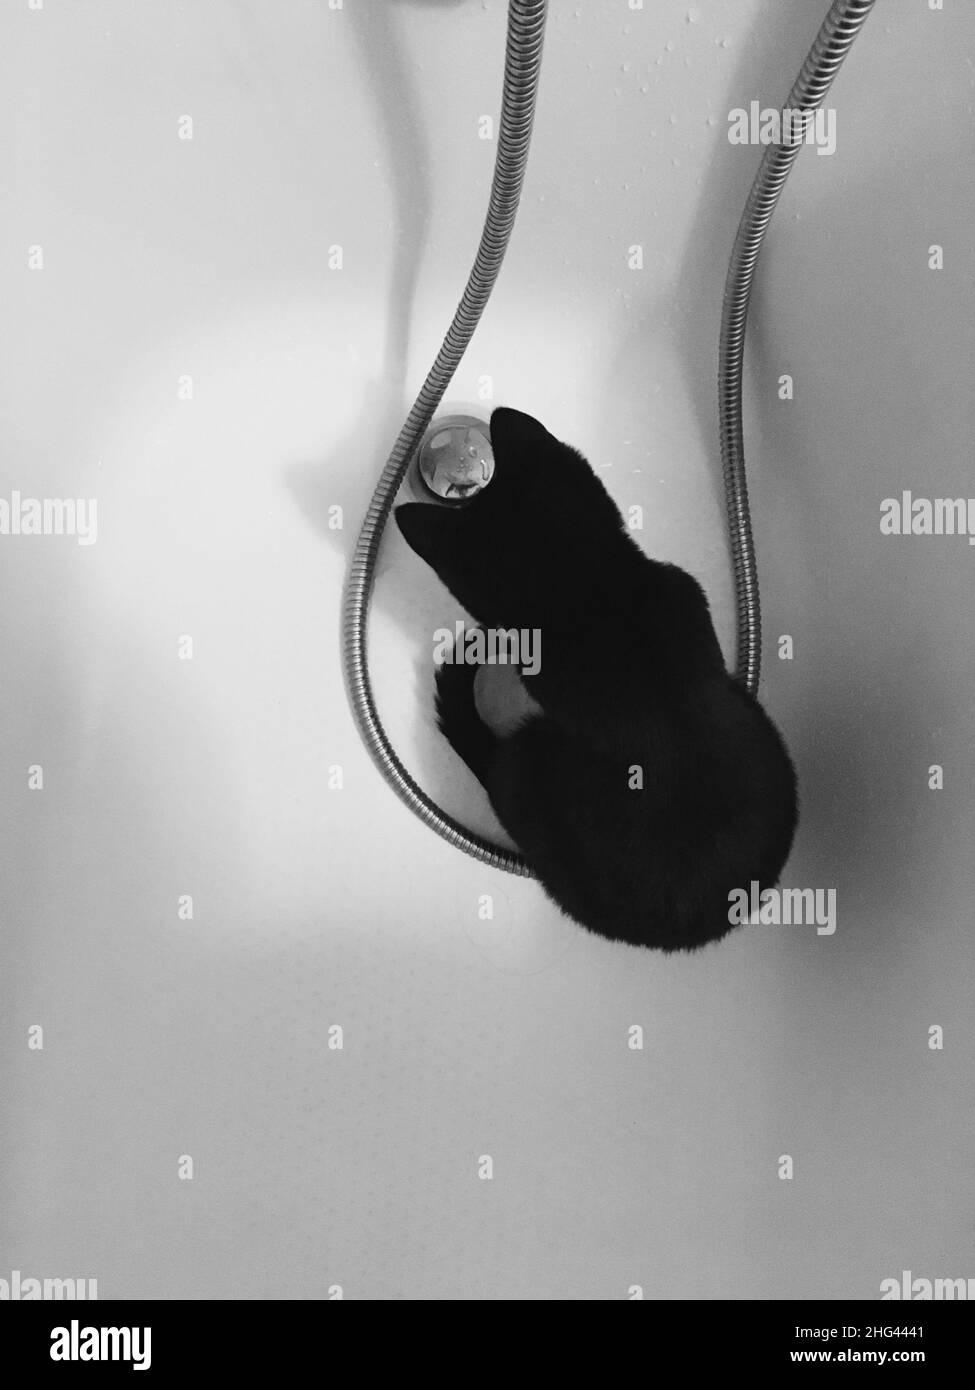 Eine schwarze Katze sitzt in einem weißen Bad und beobachtet, wie das Wasser abfliesst. Stockfoto